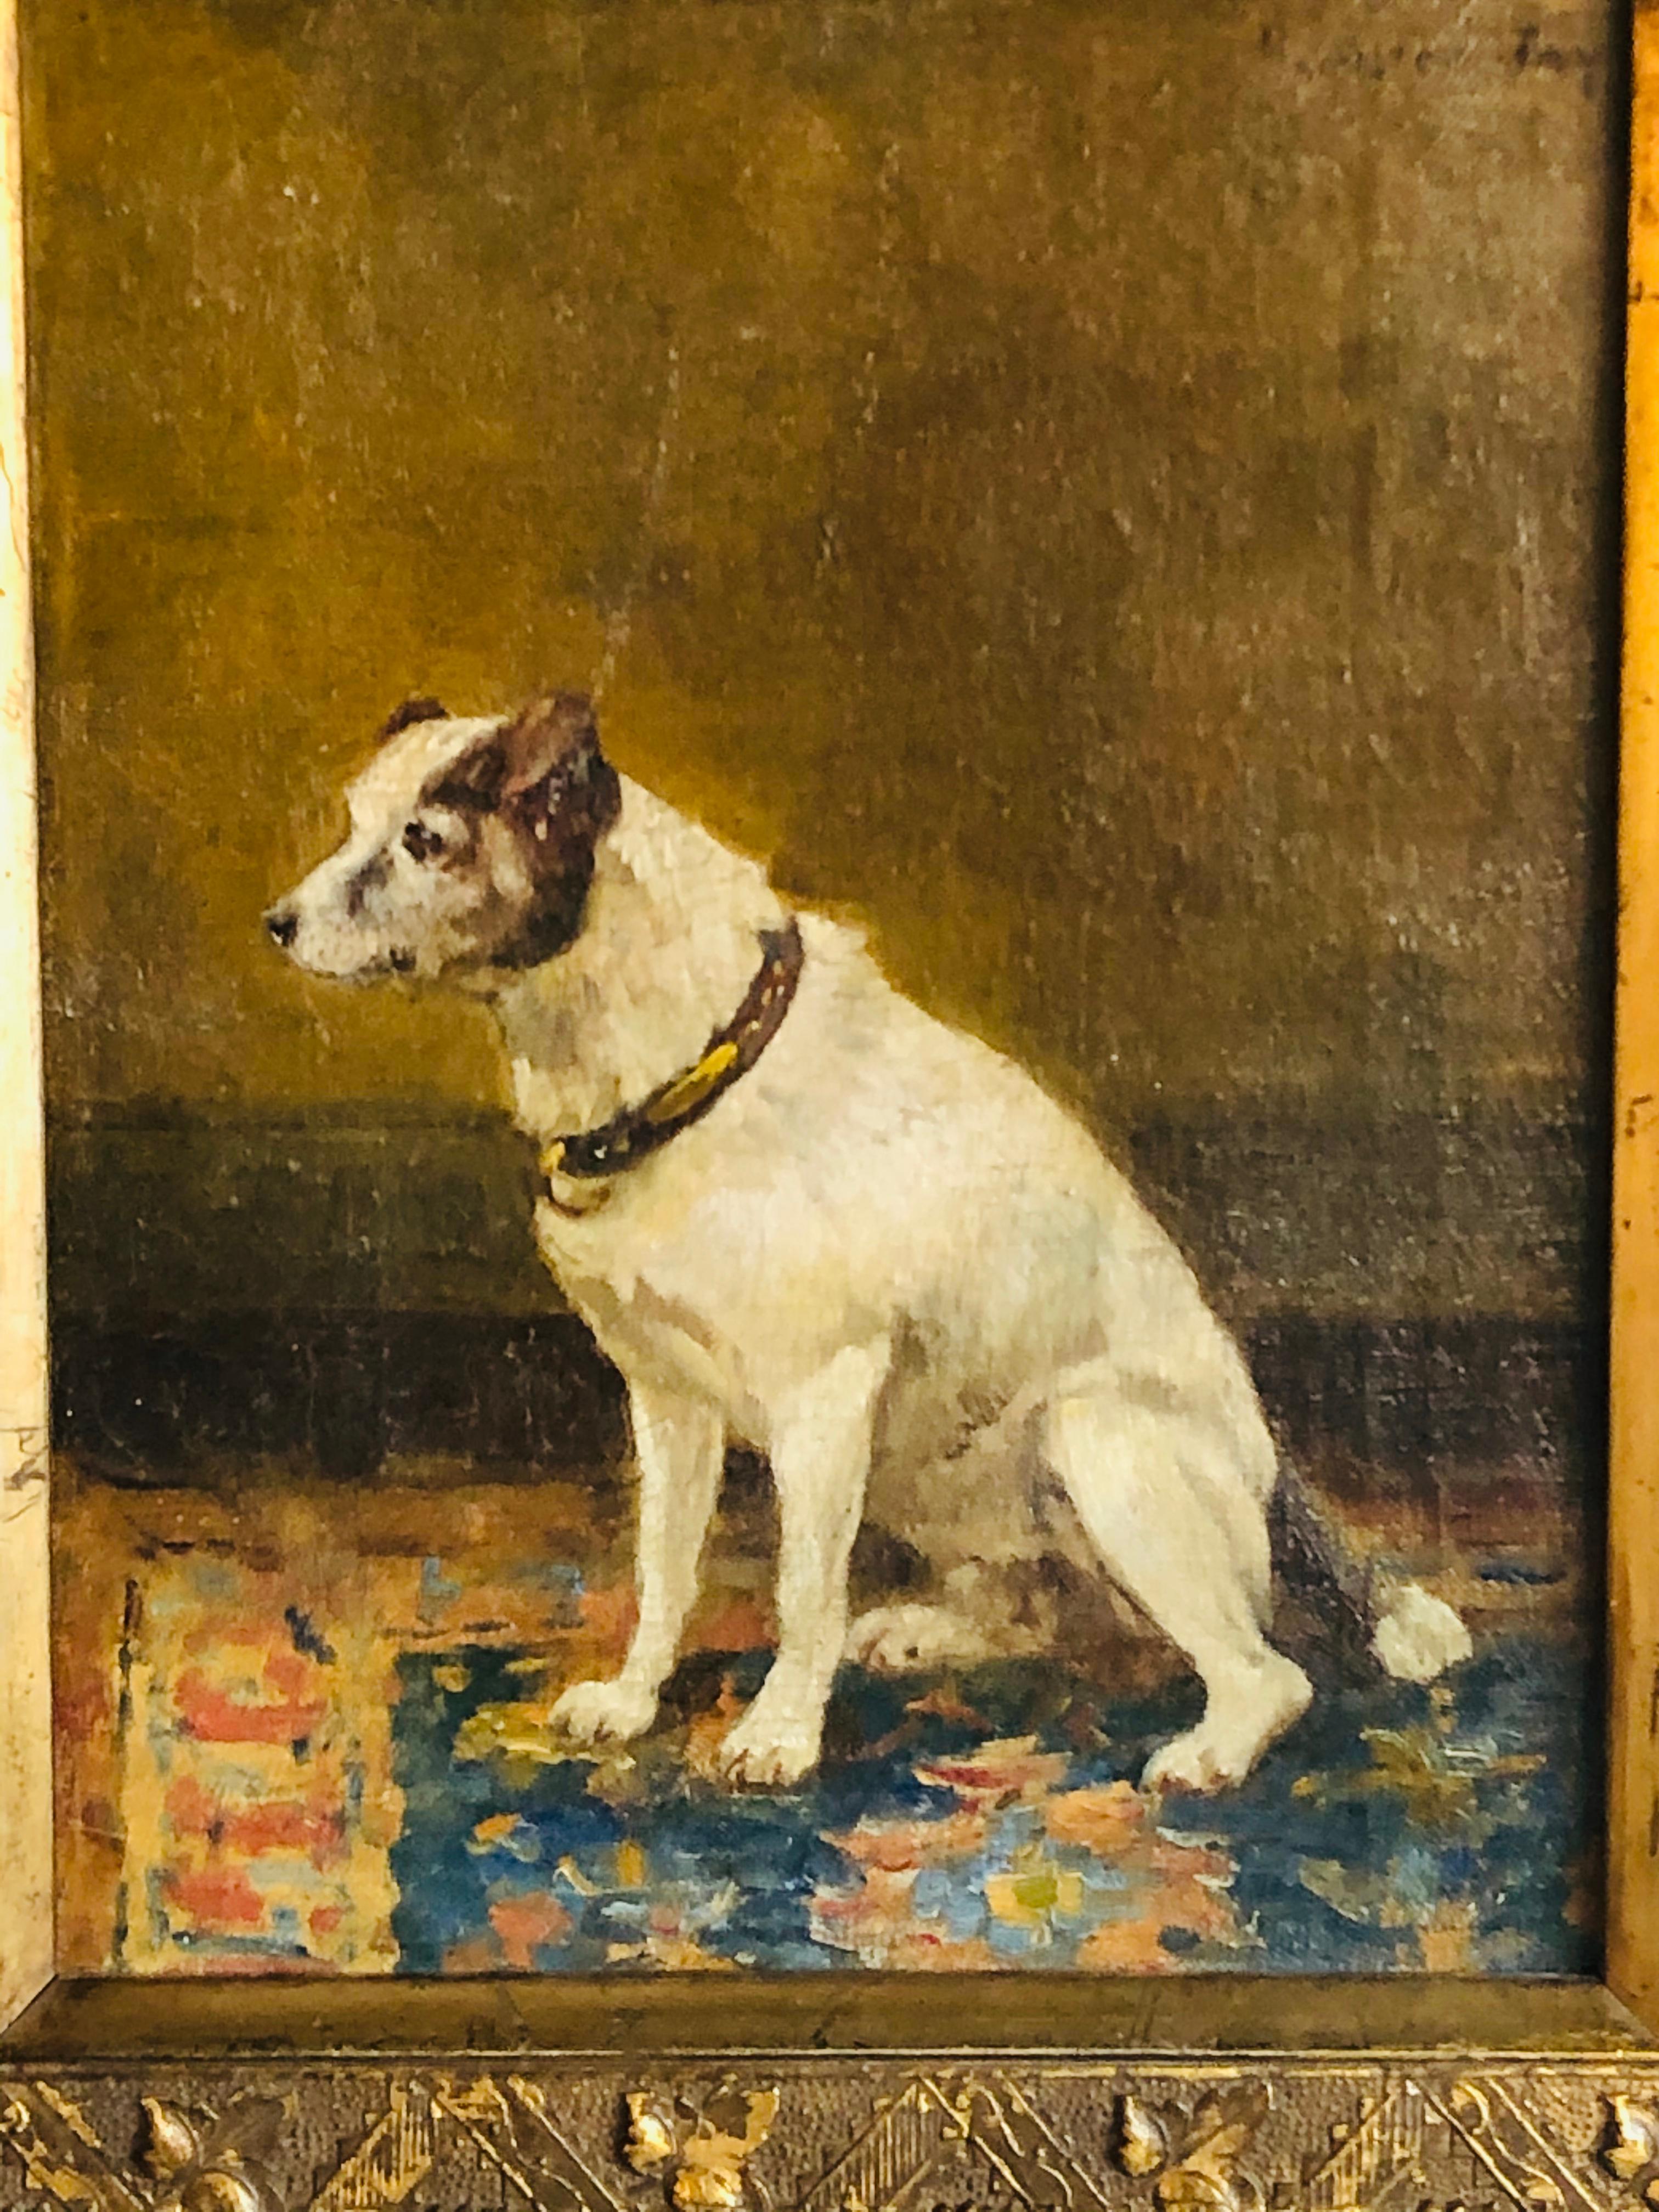 Gilt 19th Century Oil on Canvas of a Dog, Jay Hamilton with Provenance